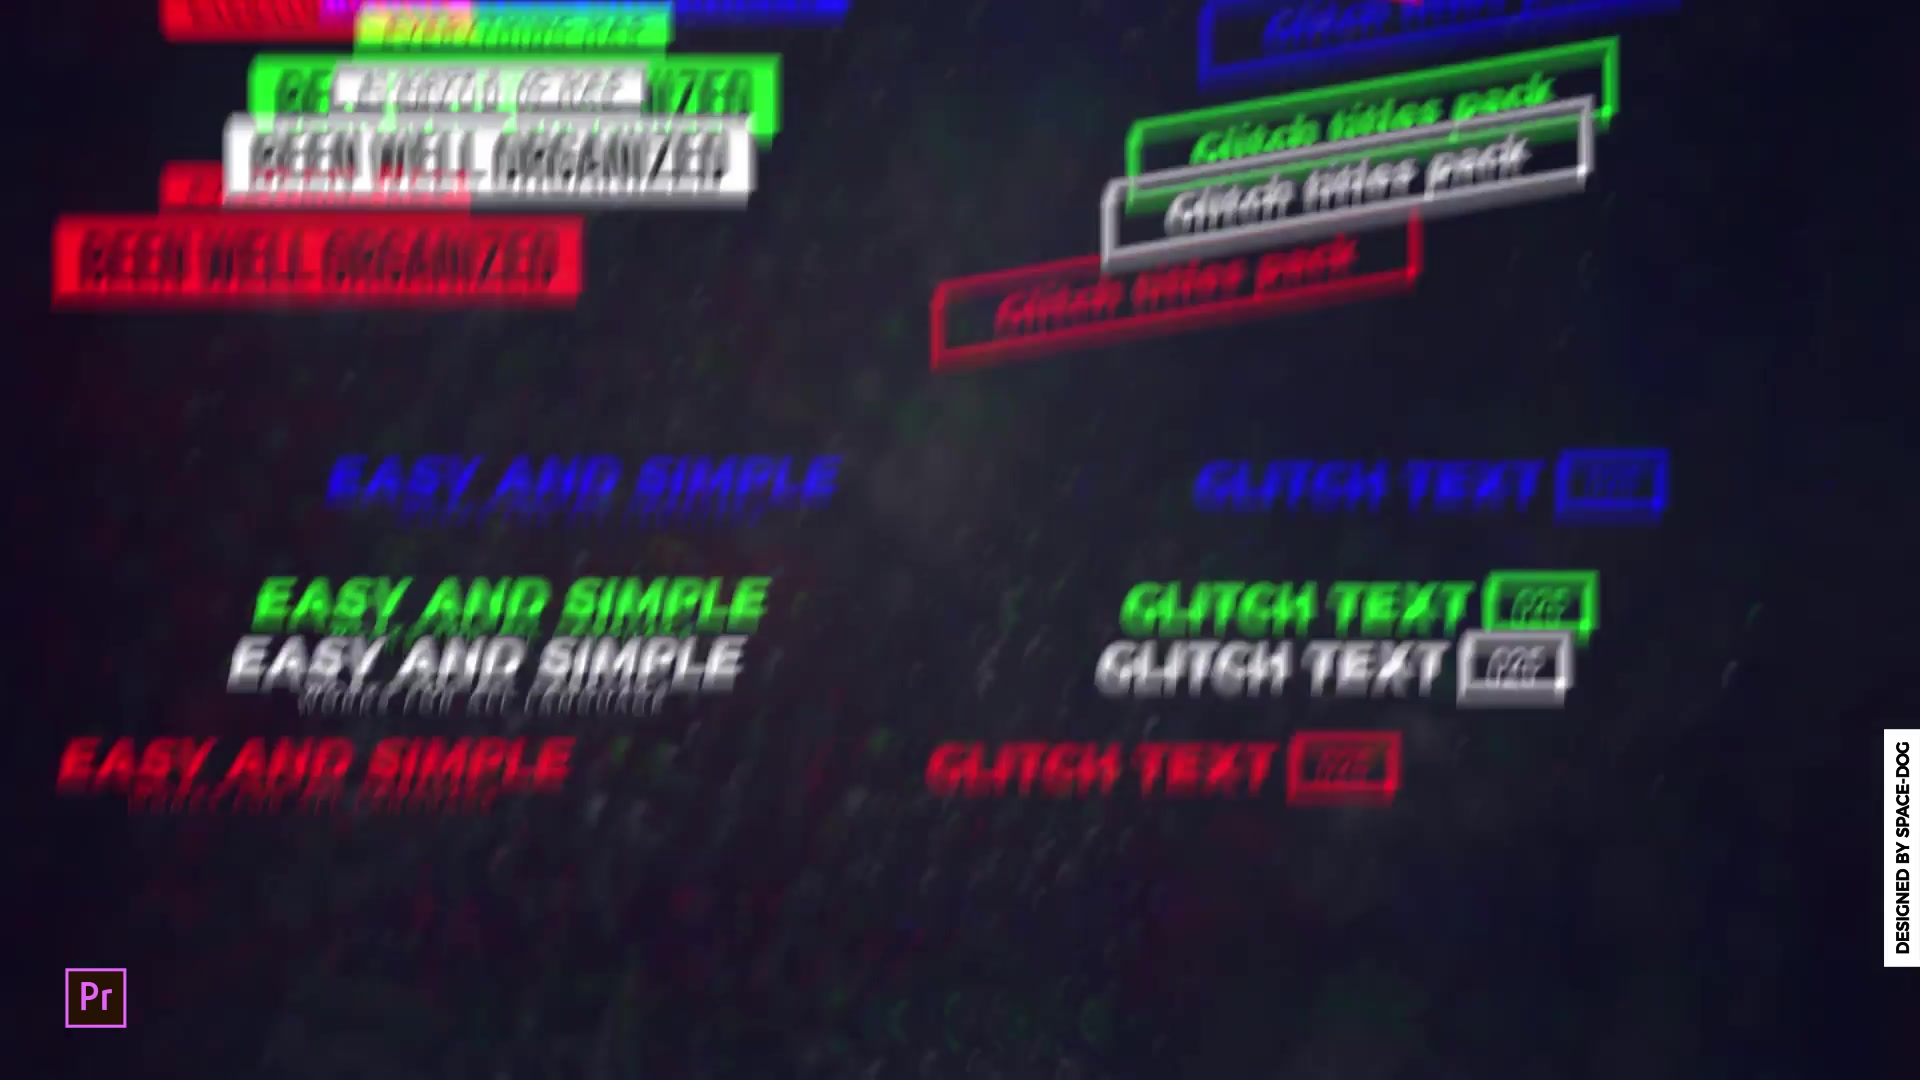 Blade Glitch Titles | Premiere Pro Videohive 28398702 Premiere Pro Image 4